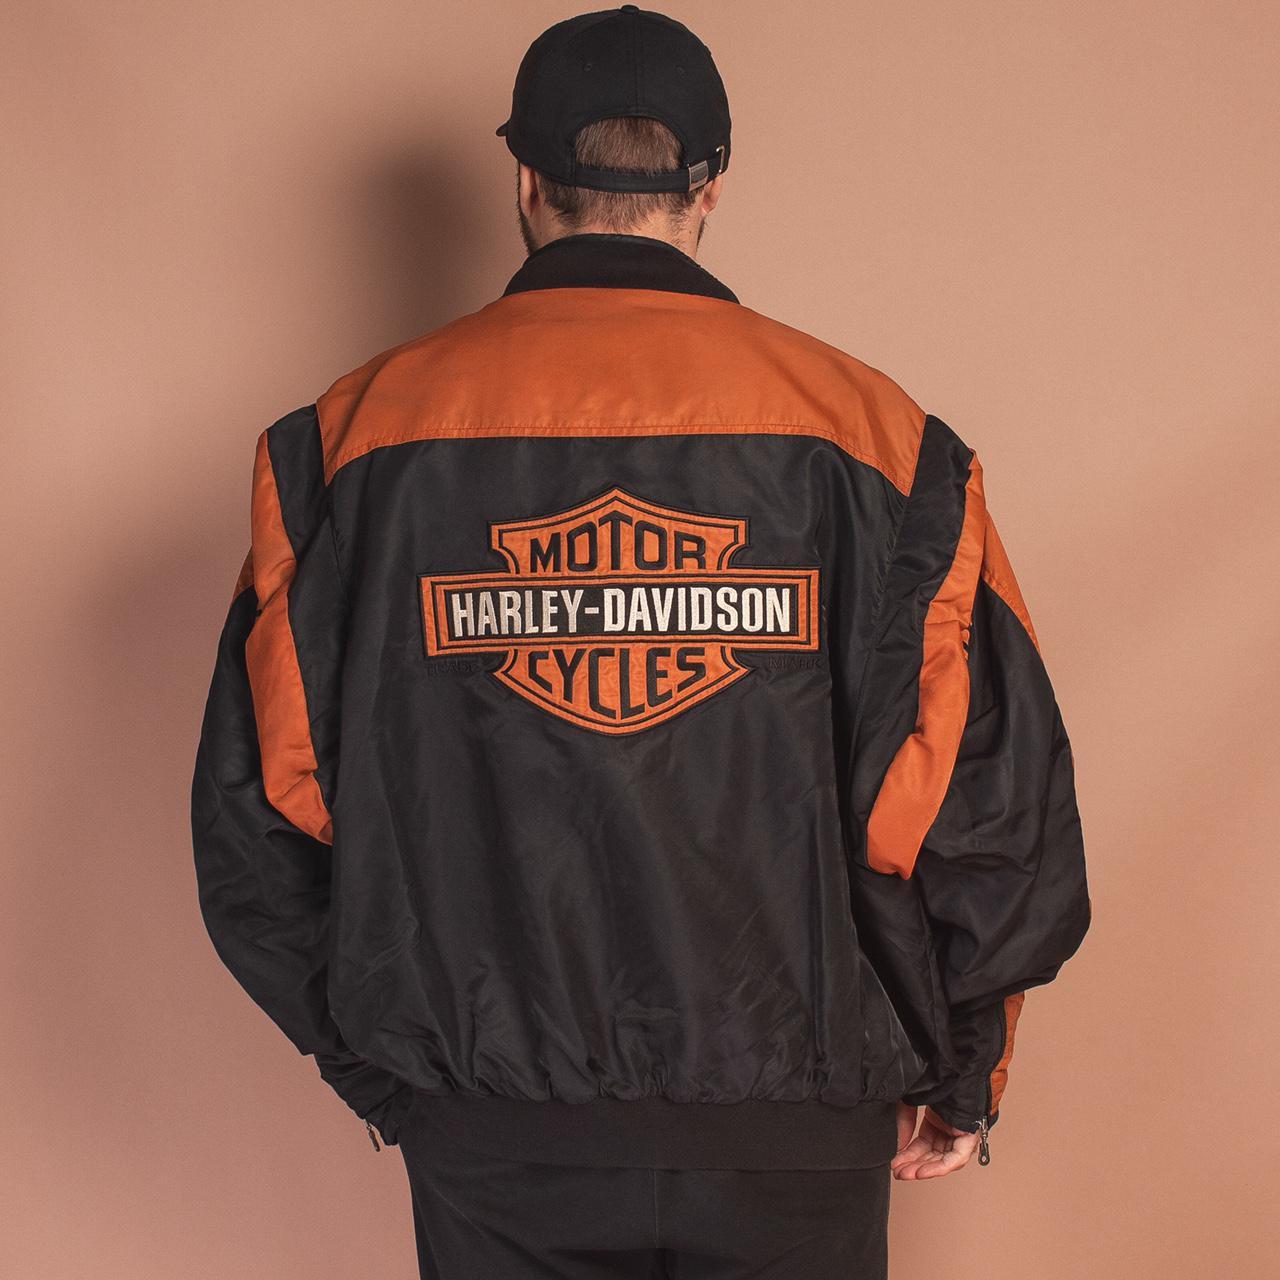 Vintage Harley Davidson bomber jacket in black,... - Depop